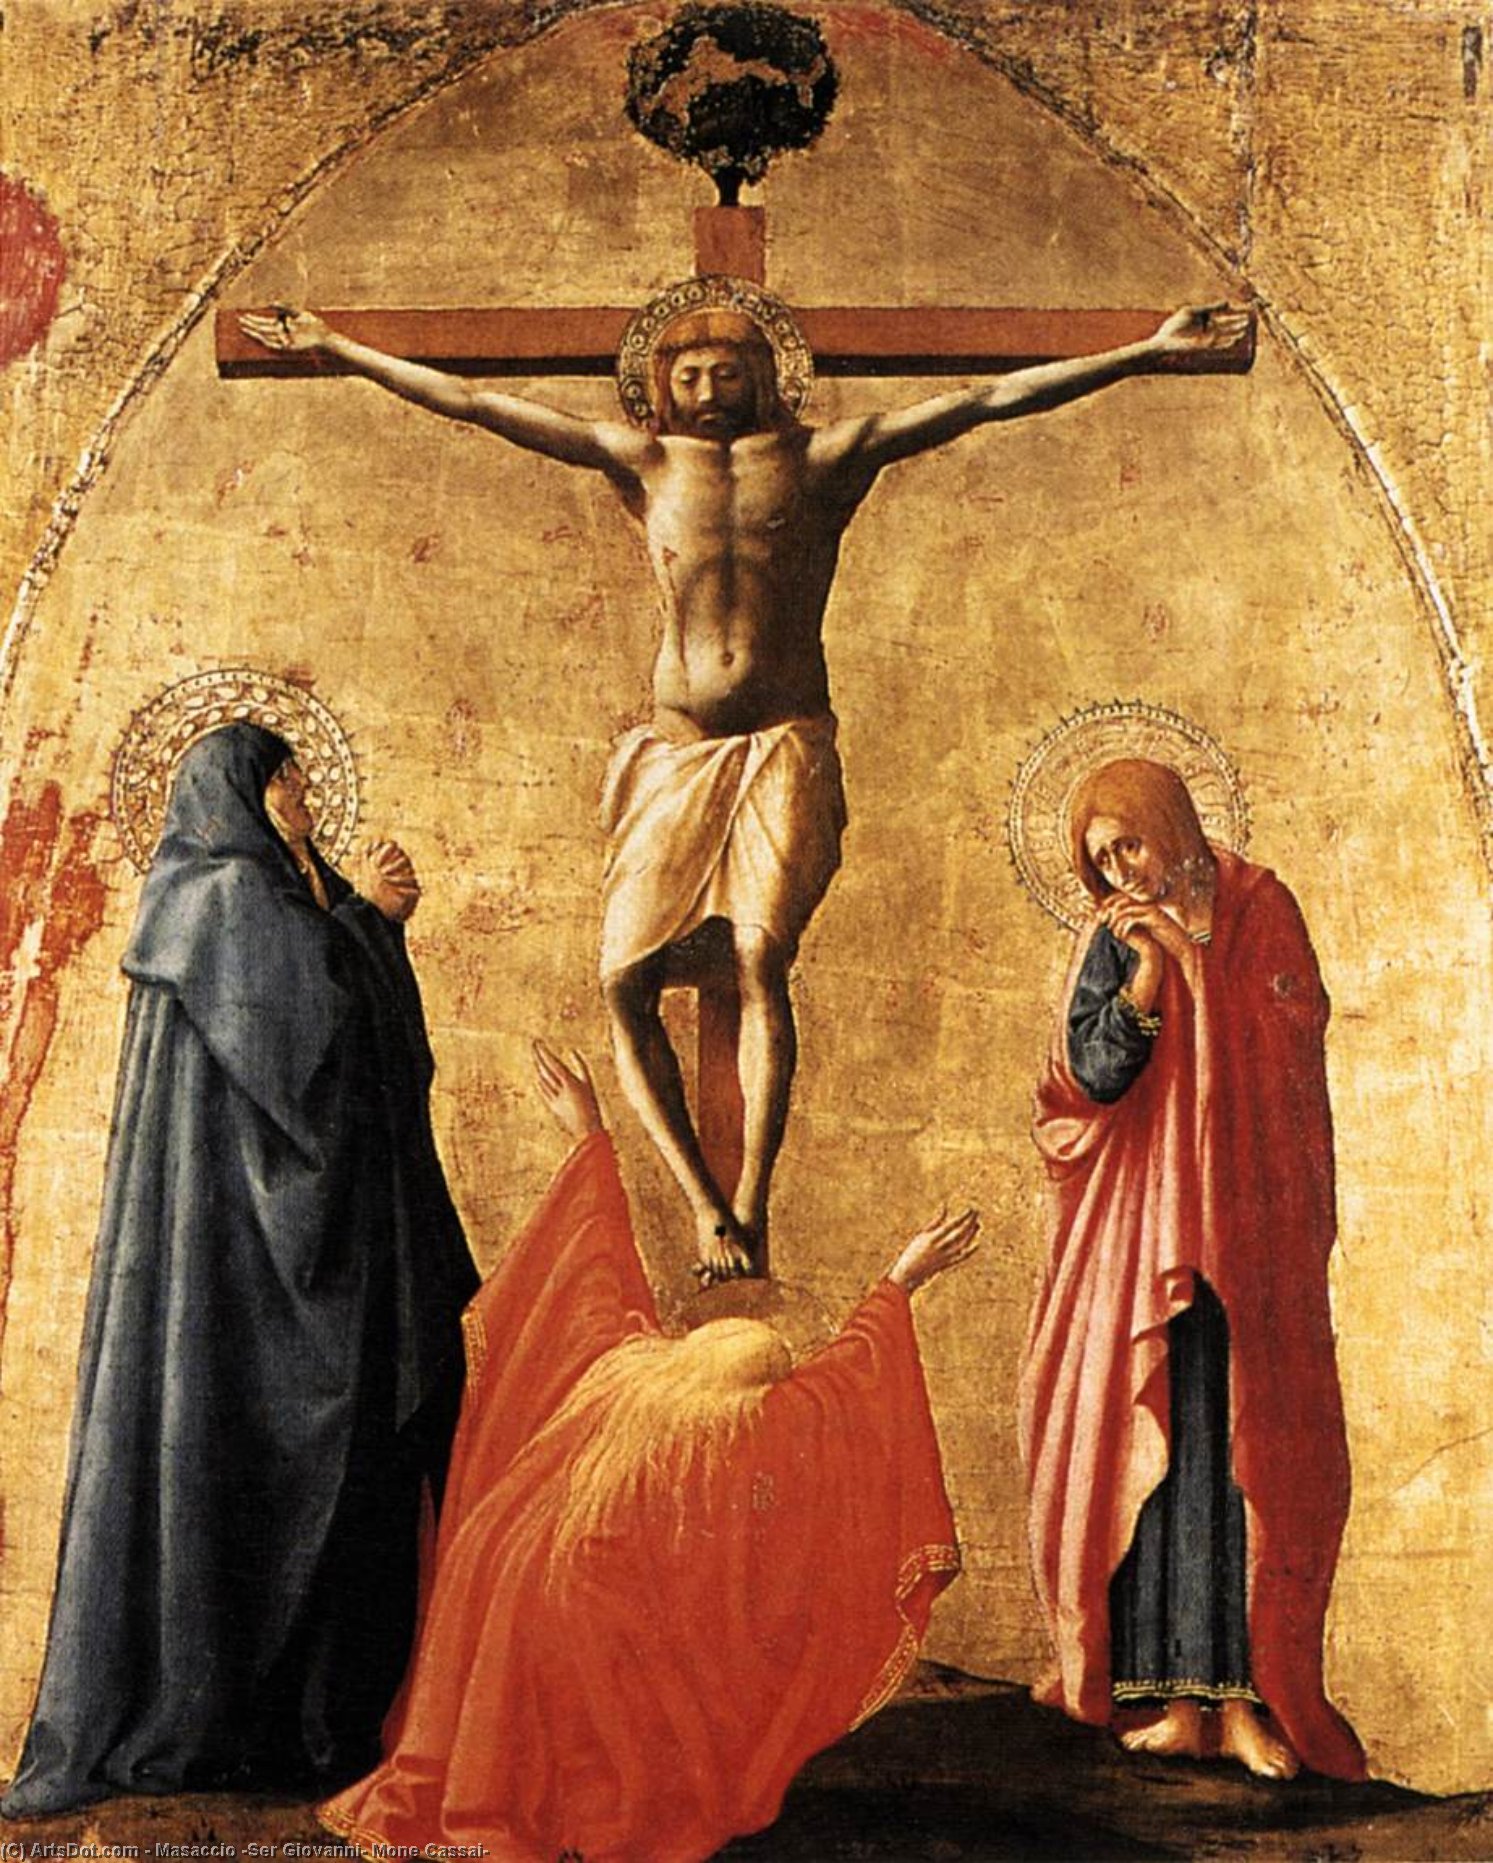 WikiOO.org - Encyclopedia of Fine Arts - Festés, Grafika Masaccio (Ser Giovanni, Mone Cassai) - Crucifixion